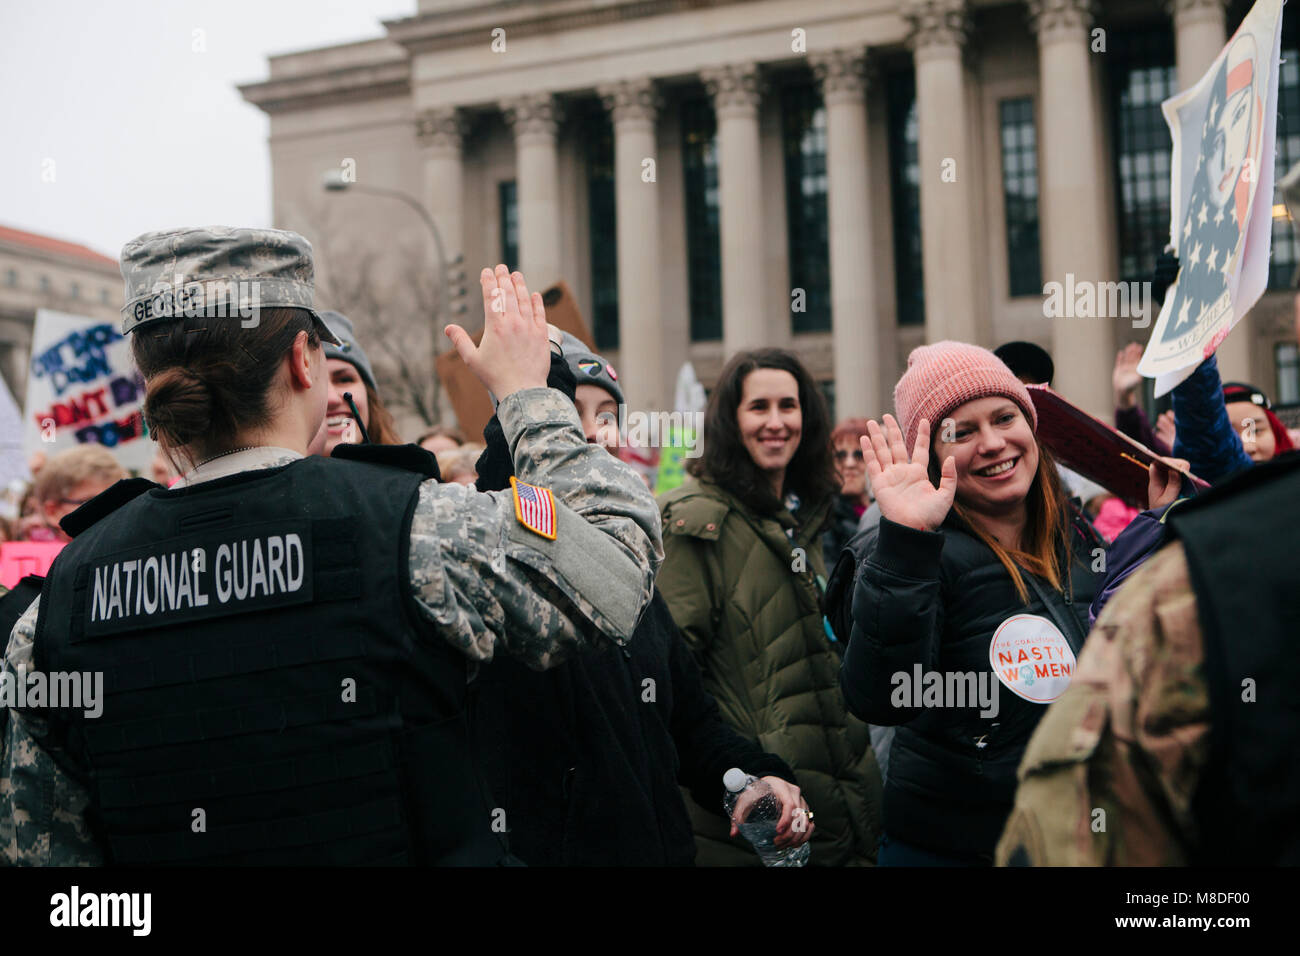 Los manifestantes alta cinco mujeres miembros de la Guardia Nacional mientras están marchando en la sección de Mujeres de la marcha en Washington D.C., 21 de enero de 2017 Foto de stock